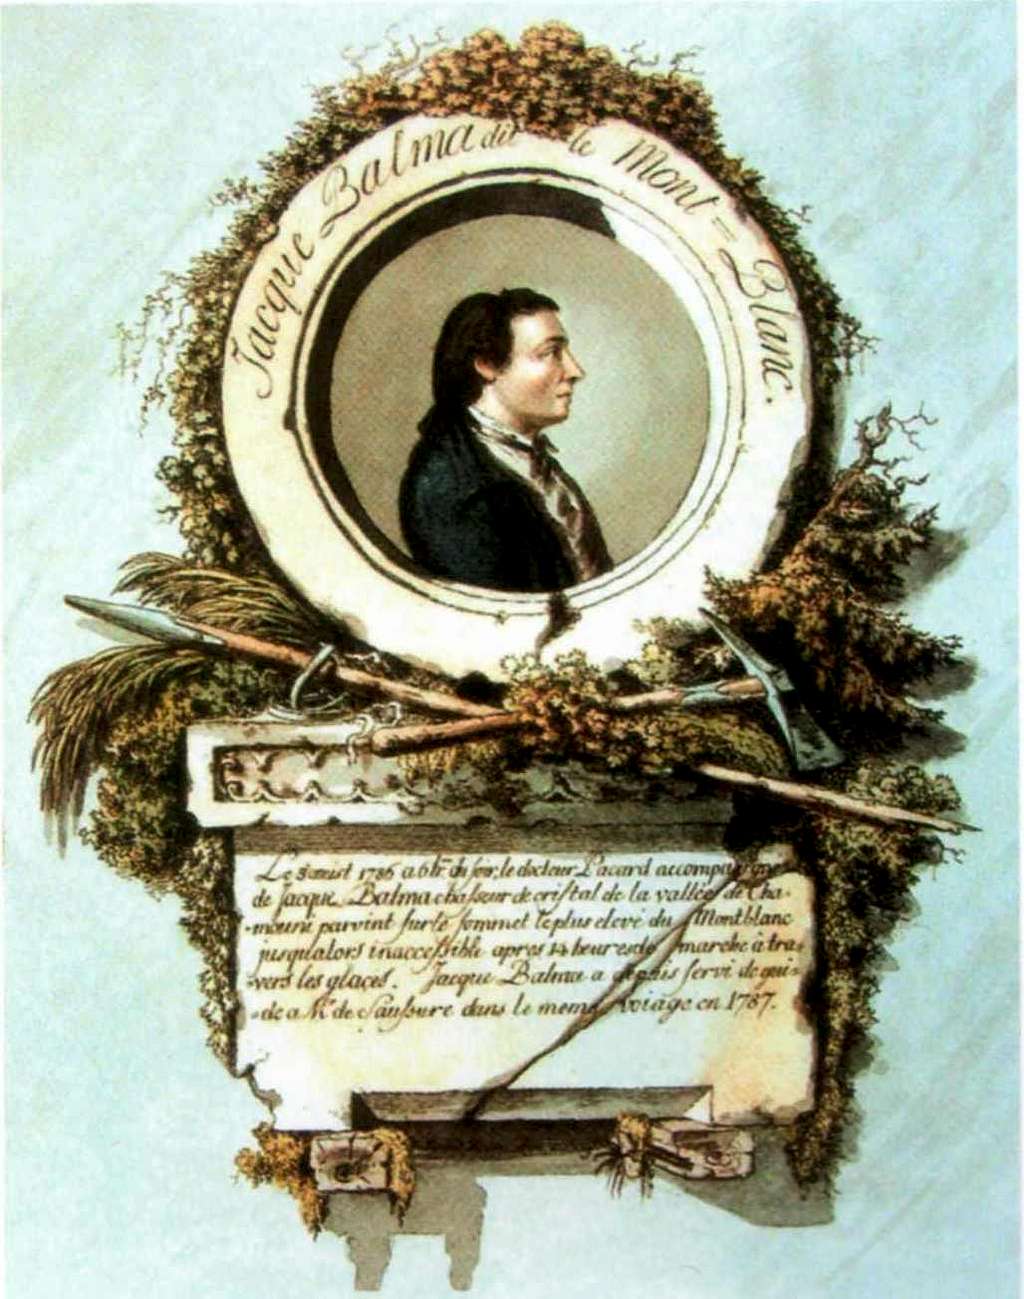 Balmat medalion portrait